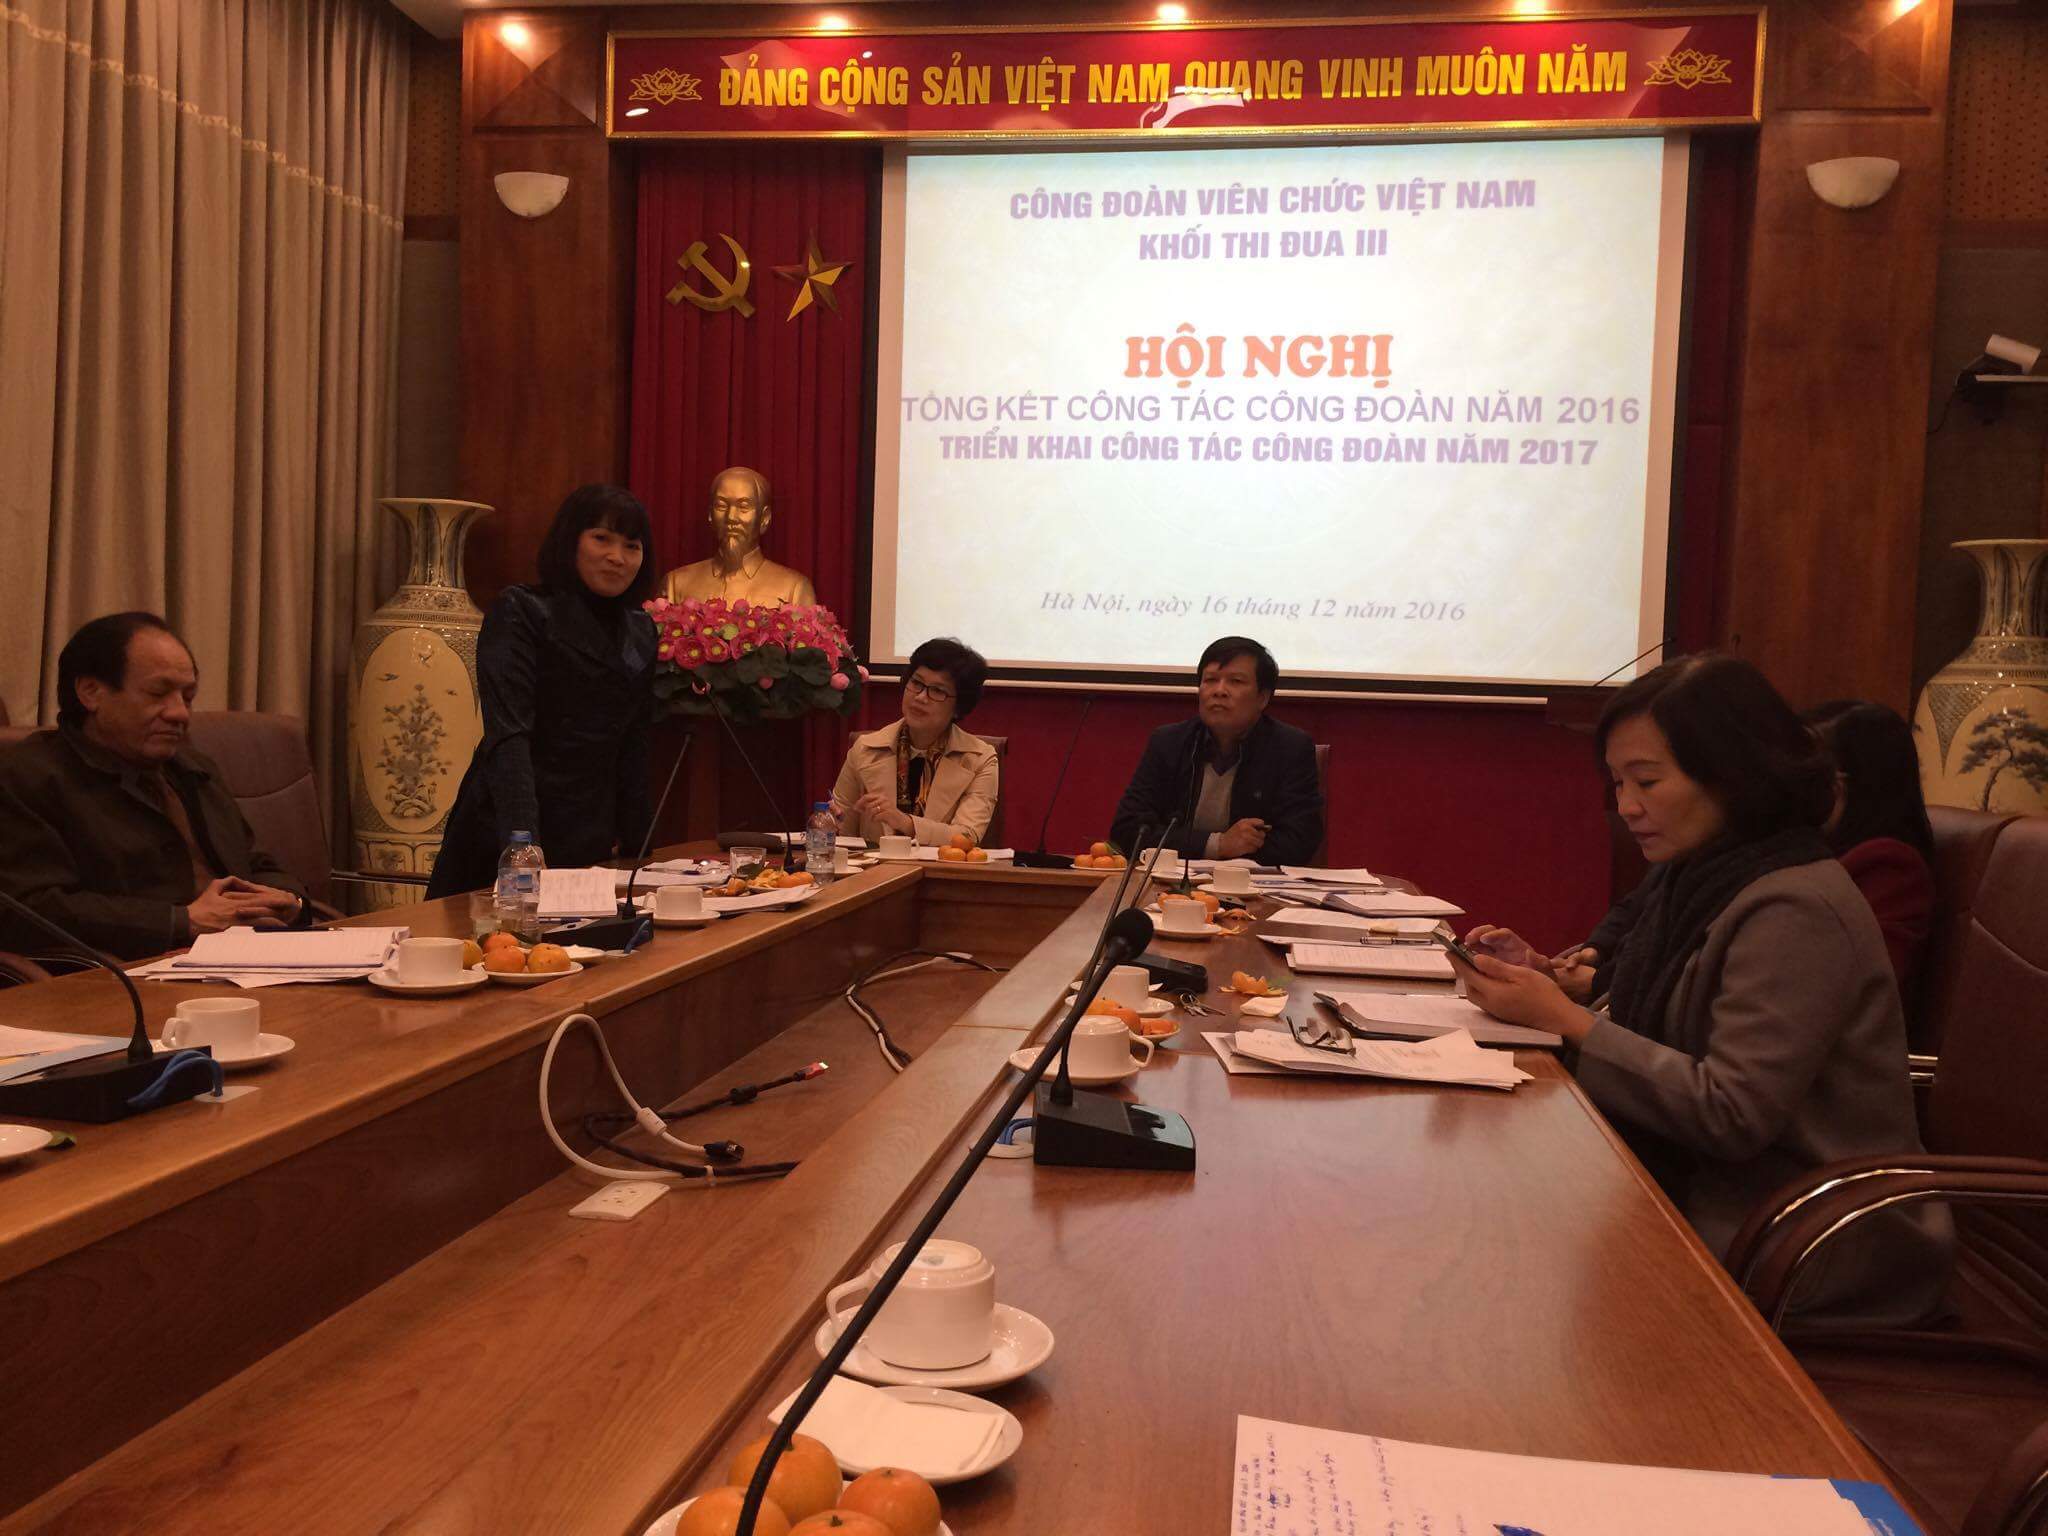 Hội nghị tổng kết công tác khối thi đua III Công đoàn Viên chức Việt Nam